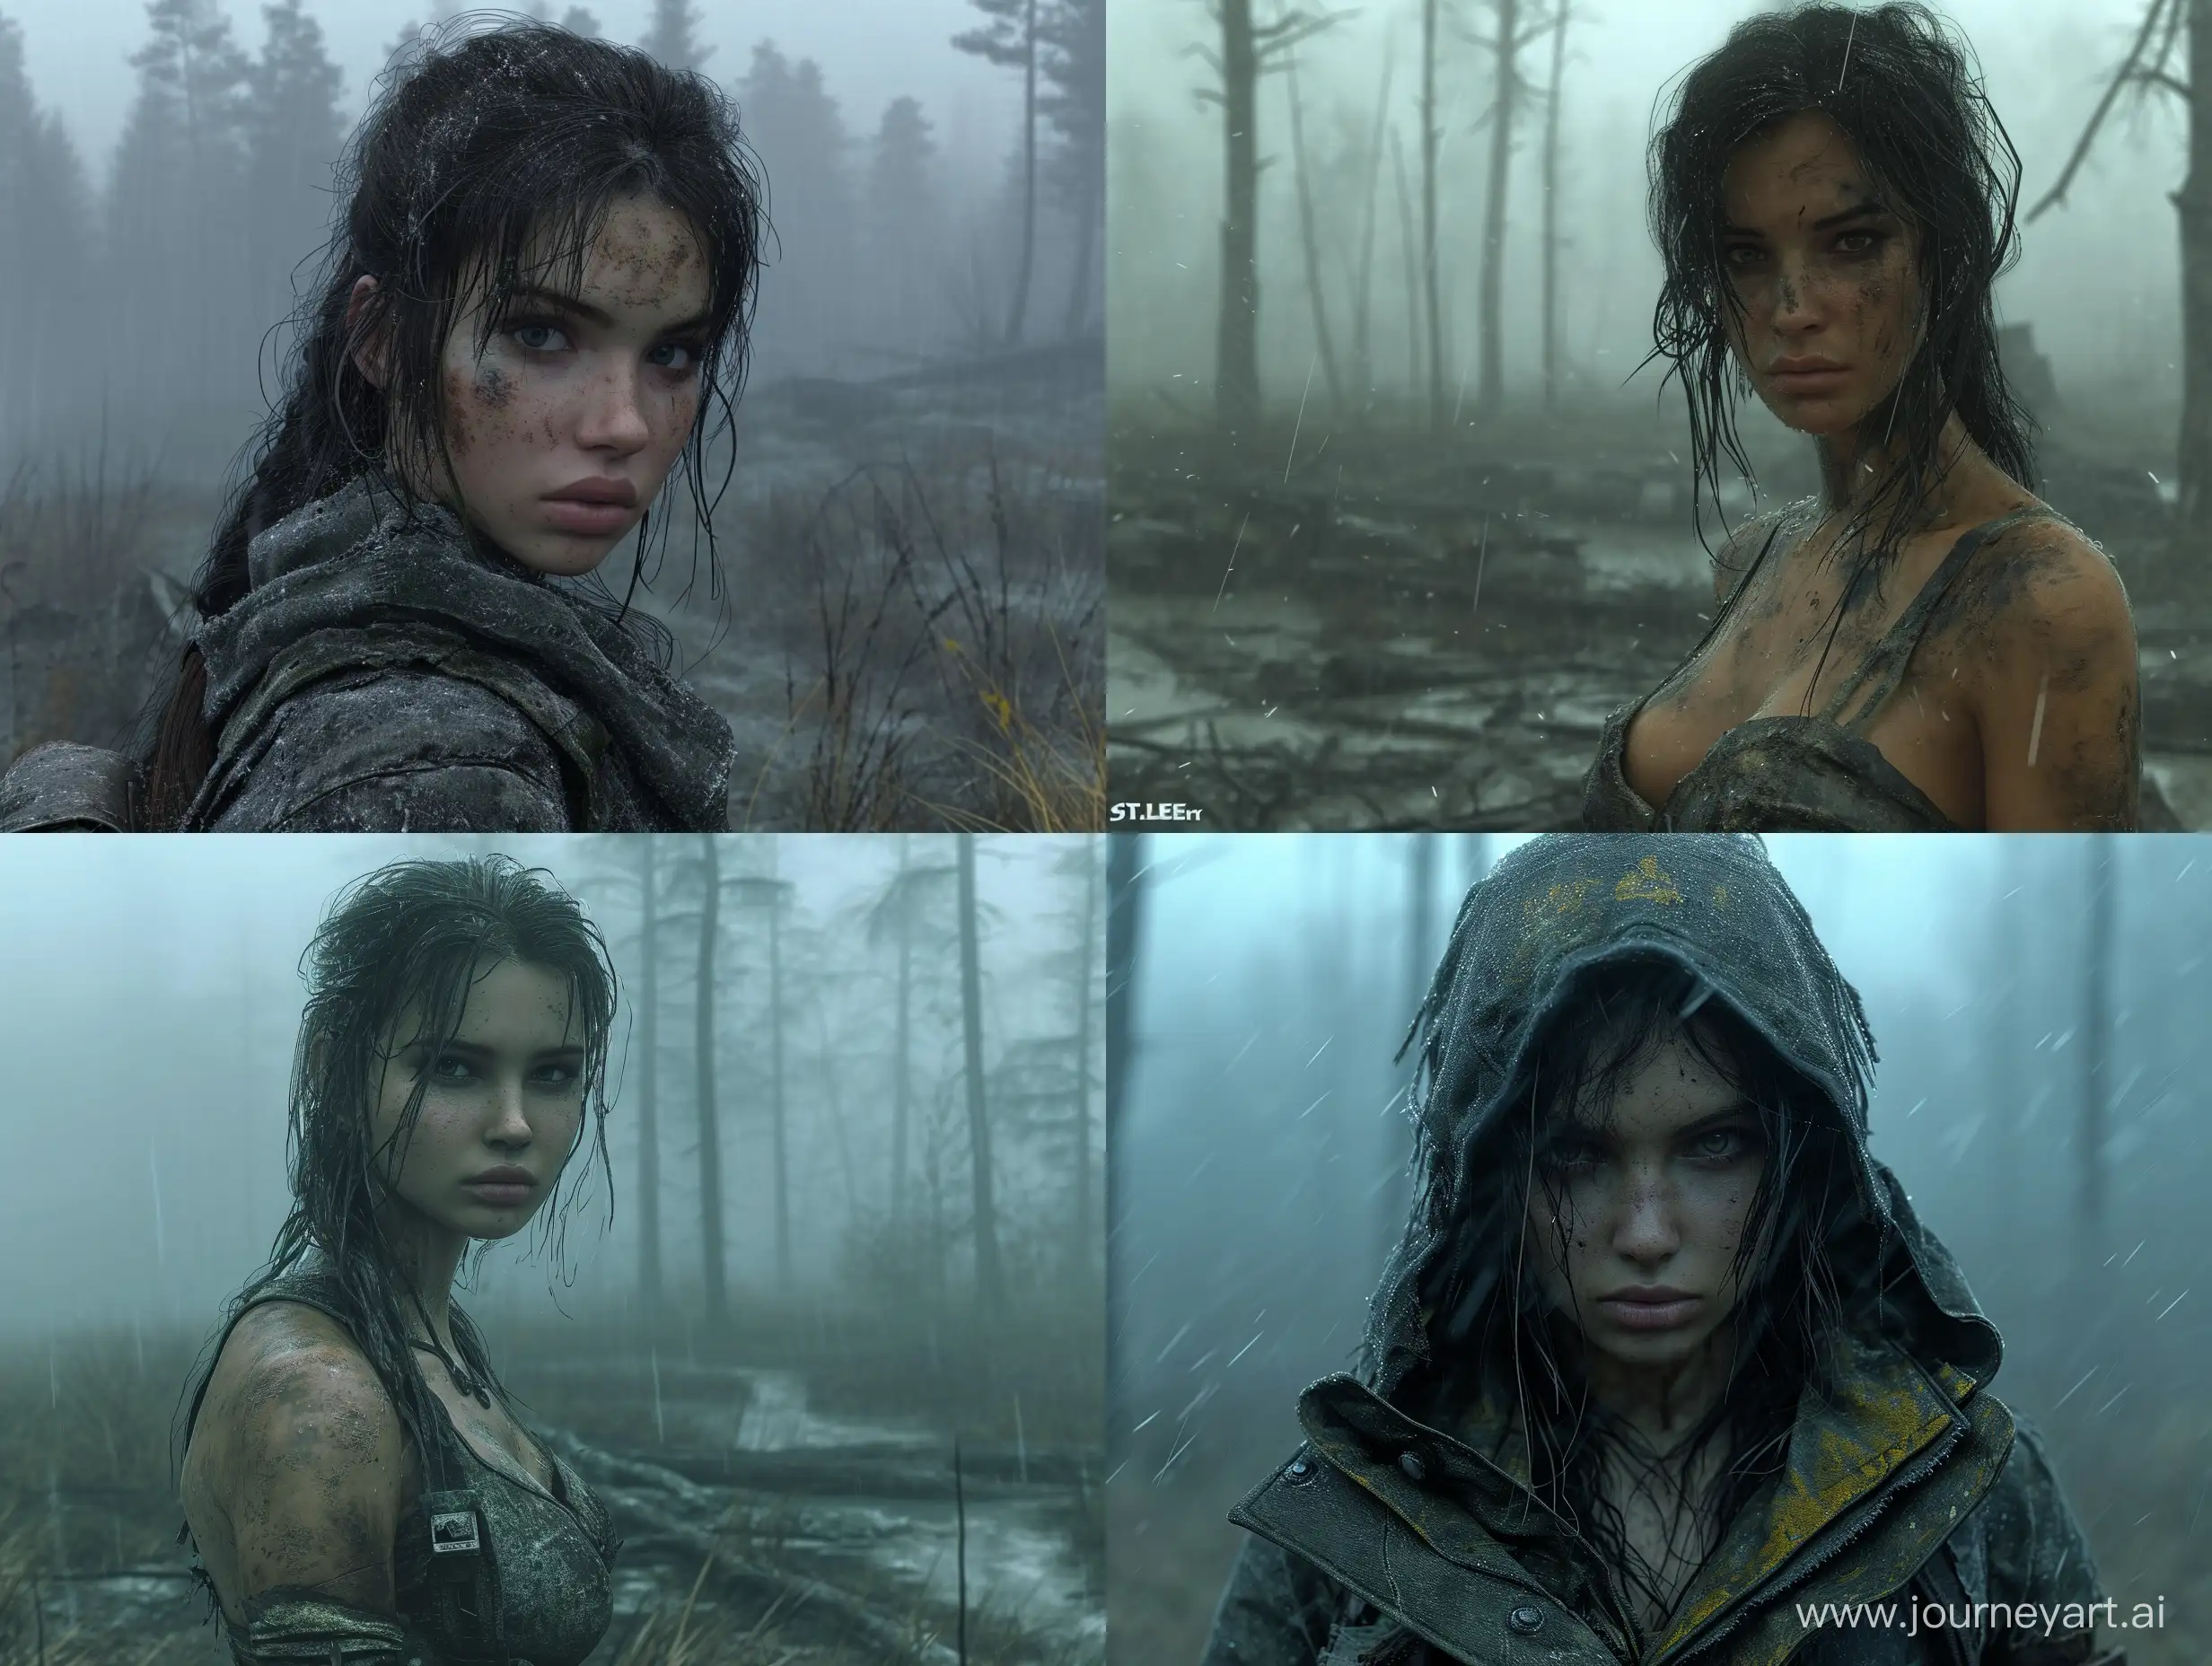 Stunning-Female-Mercenary-in-STALKER-Video-Game-Environment